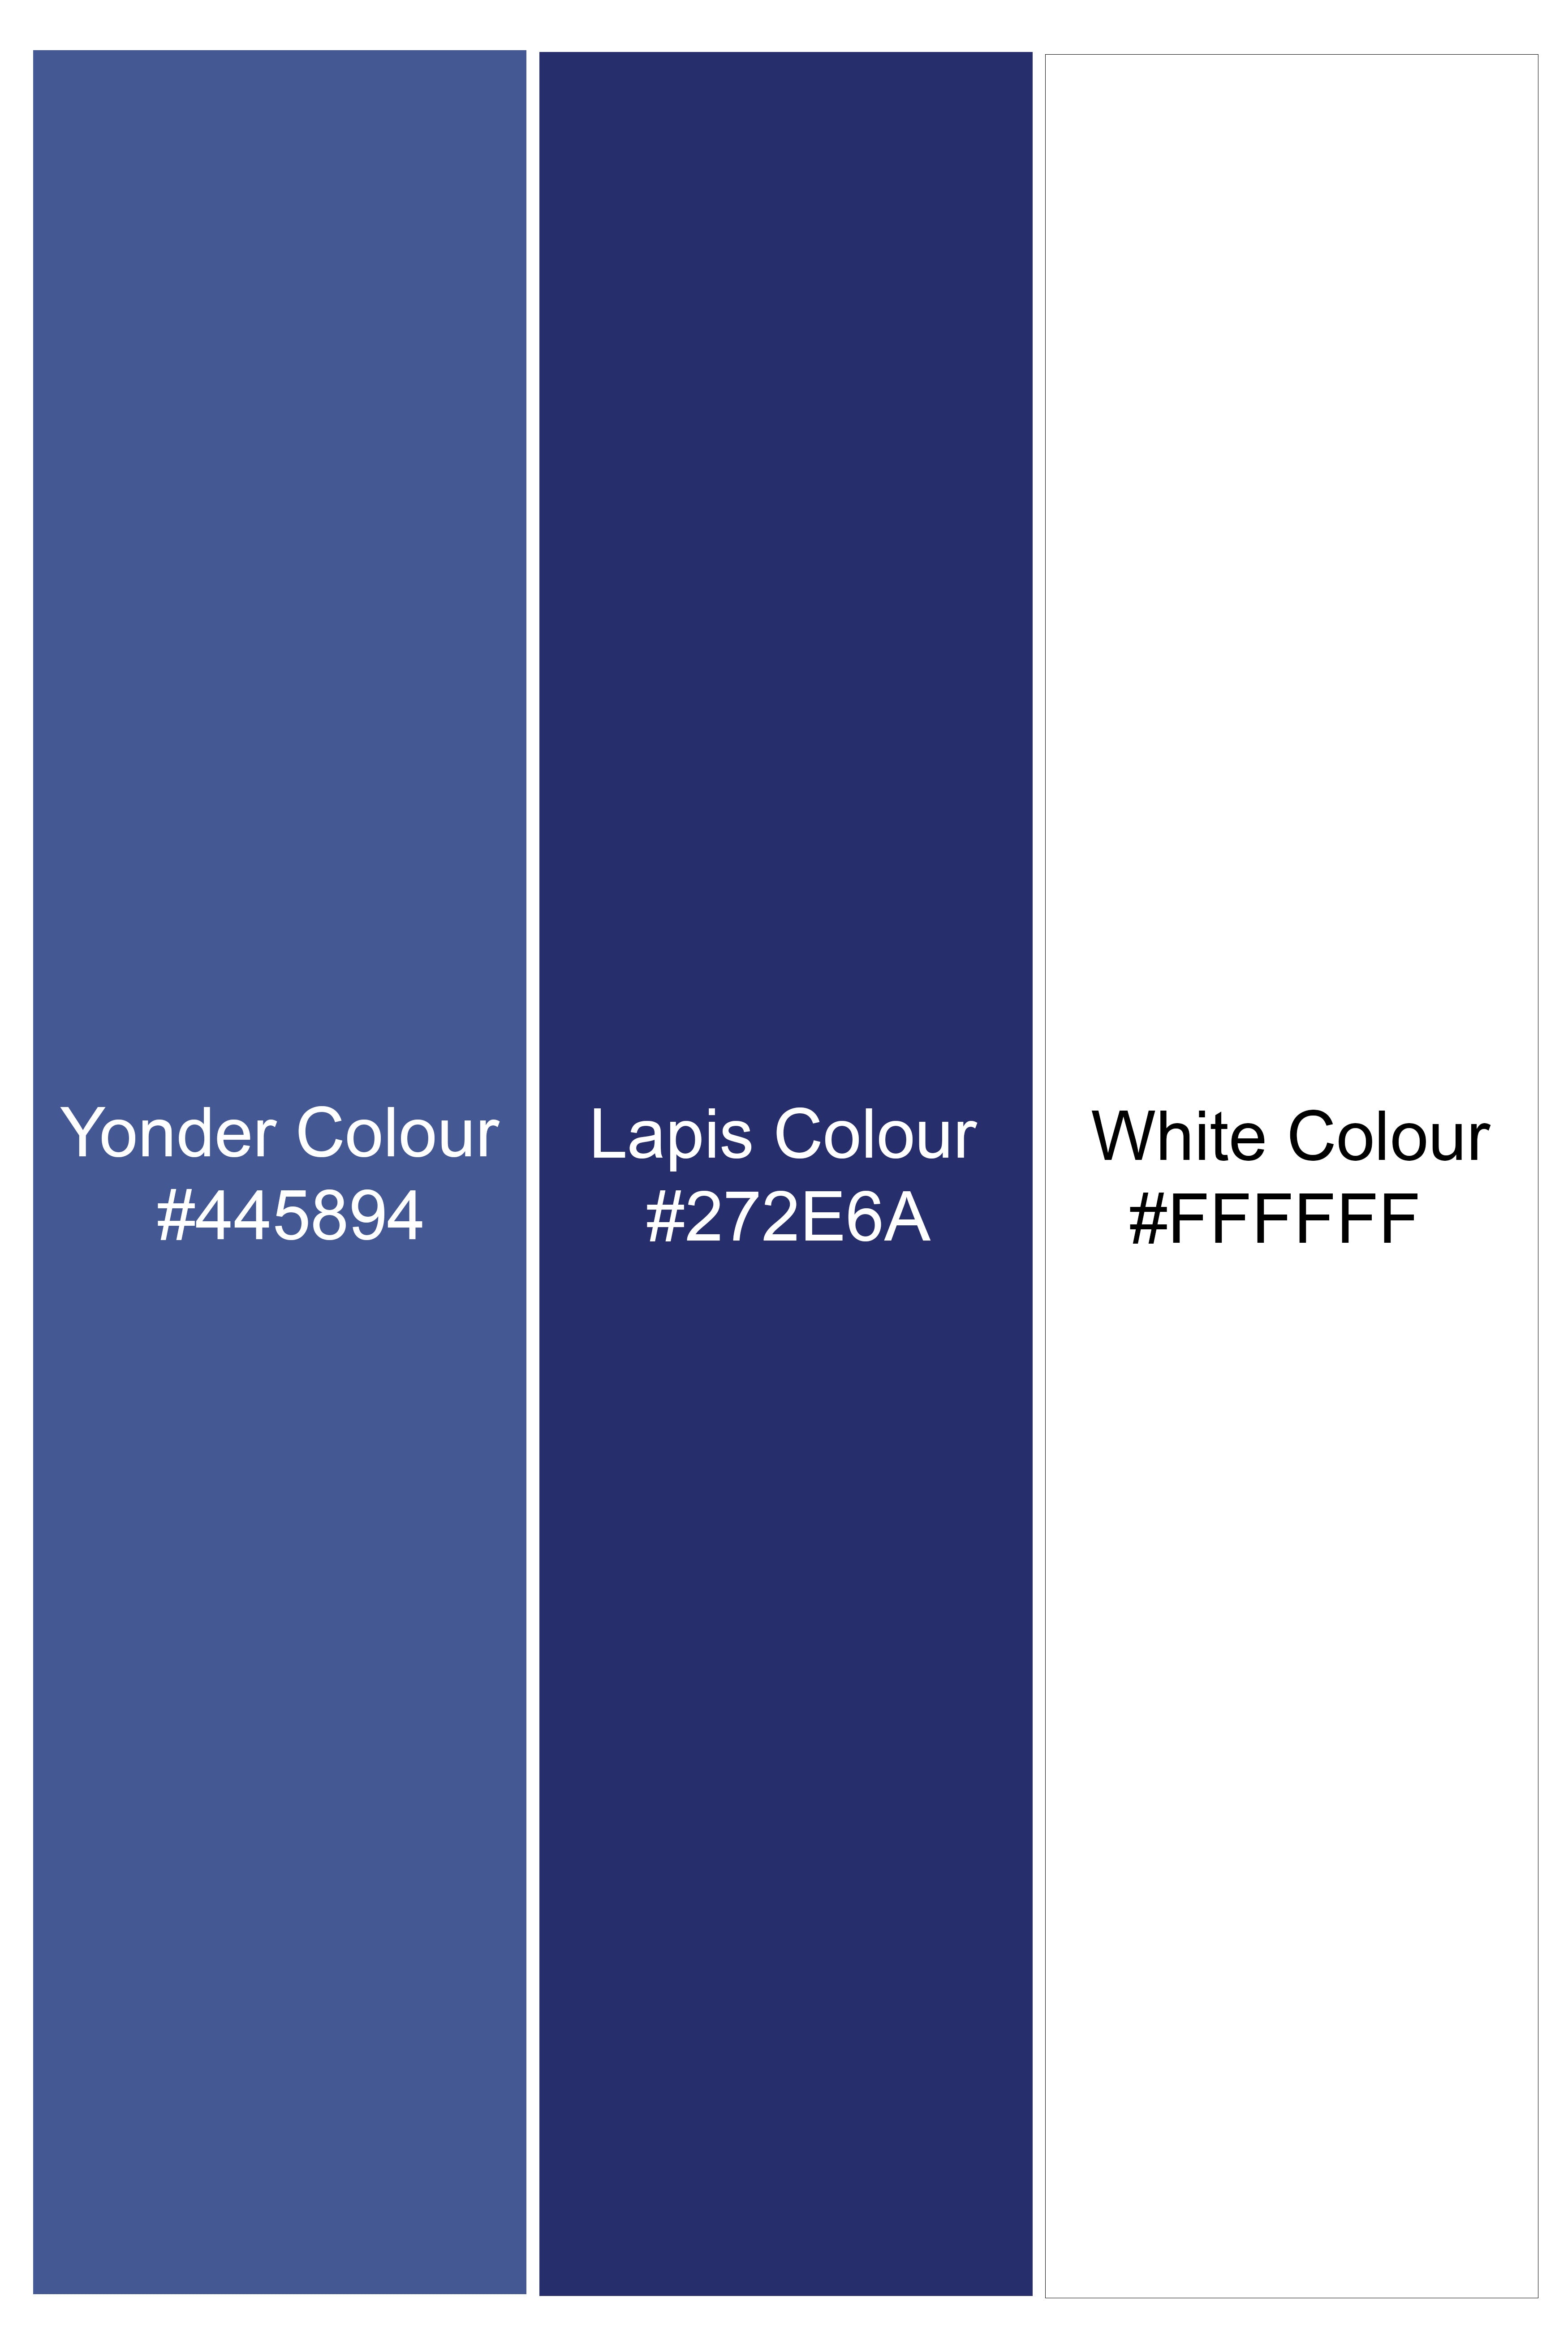 Yonder Blue Plaid Wool Rich Waistcoat V2944-36, V2944-38, V2944-40, V2944-42, V2944-44, V2944-46, V2944-48, V2944-50, V2944-44, V2944-54, V2944-56, V2944-58, V2944-60